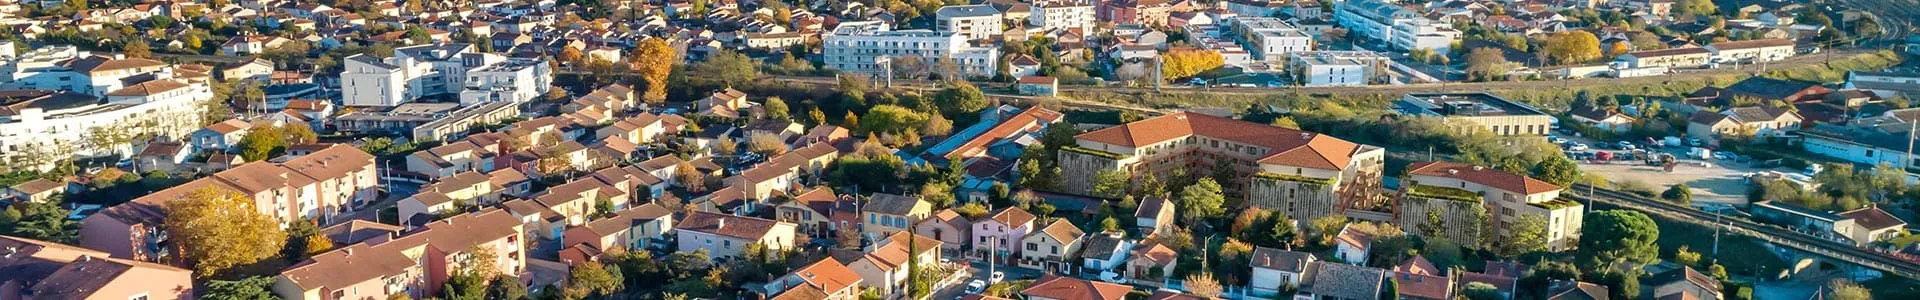 Vue aérienne du quartier autour de la résidence Tosca Bella